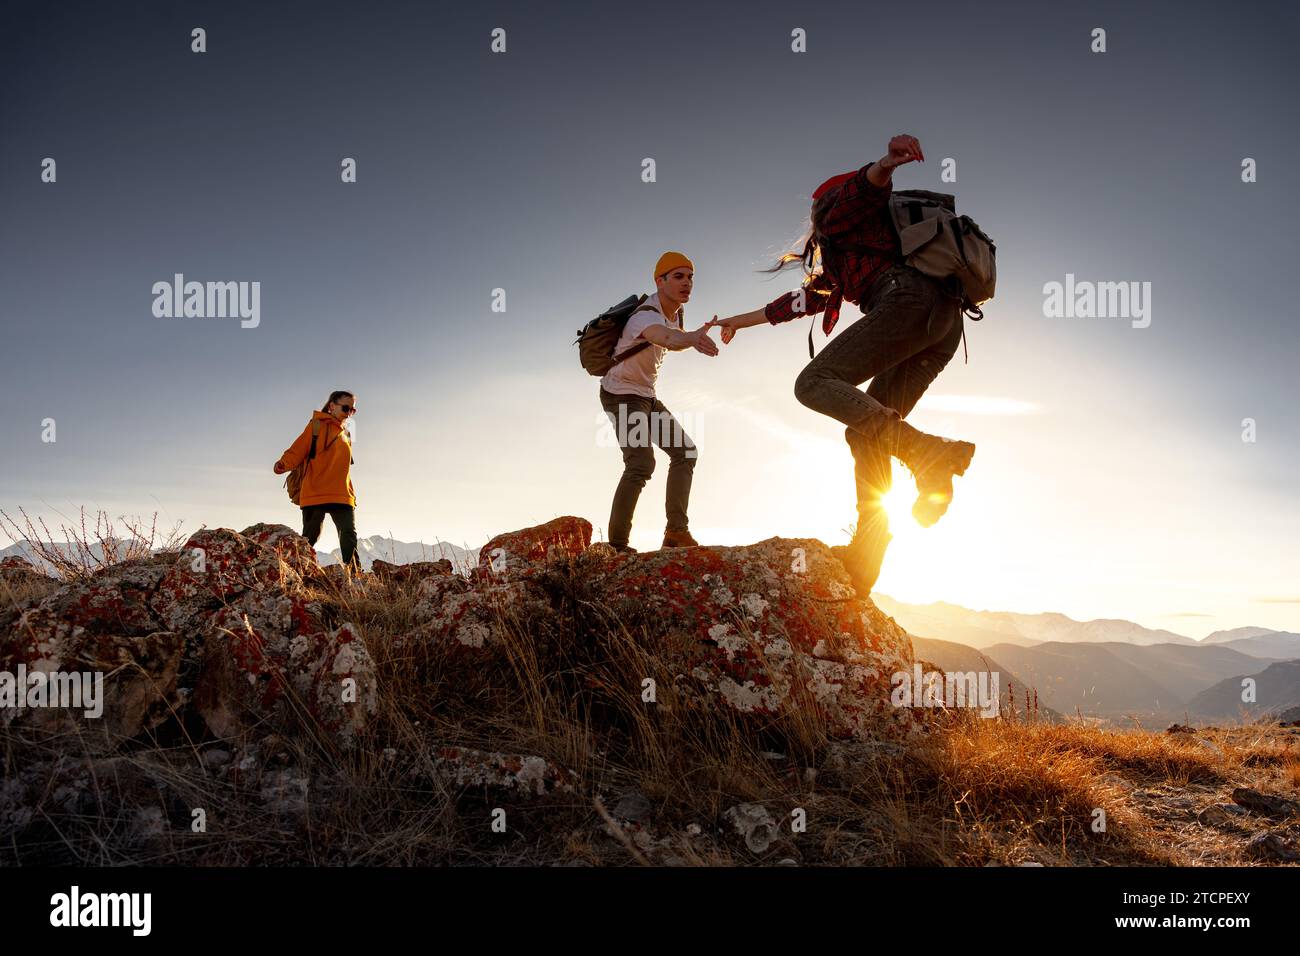 Groupe de jeunes randonneurs avec des sacs à dos marche avec des sacs à dos et s'aide les uns les autres dans l'escalade dans les montagnes de coucher de soleil Banque D'Images